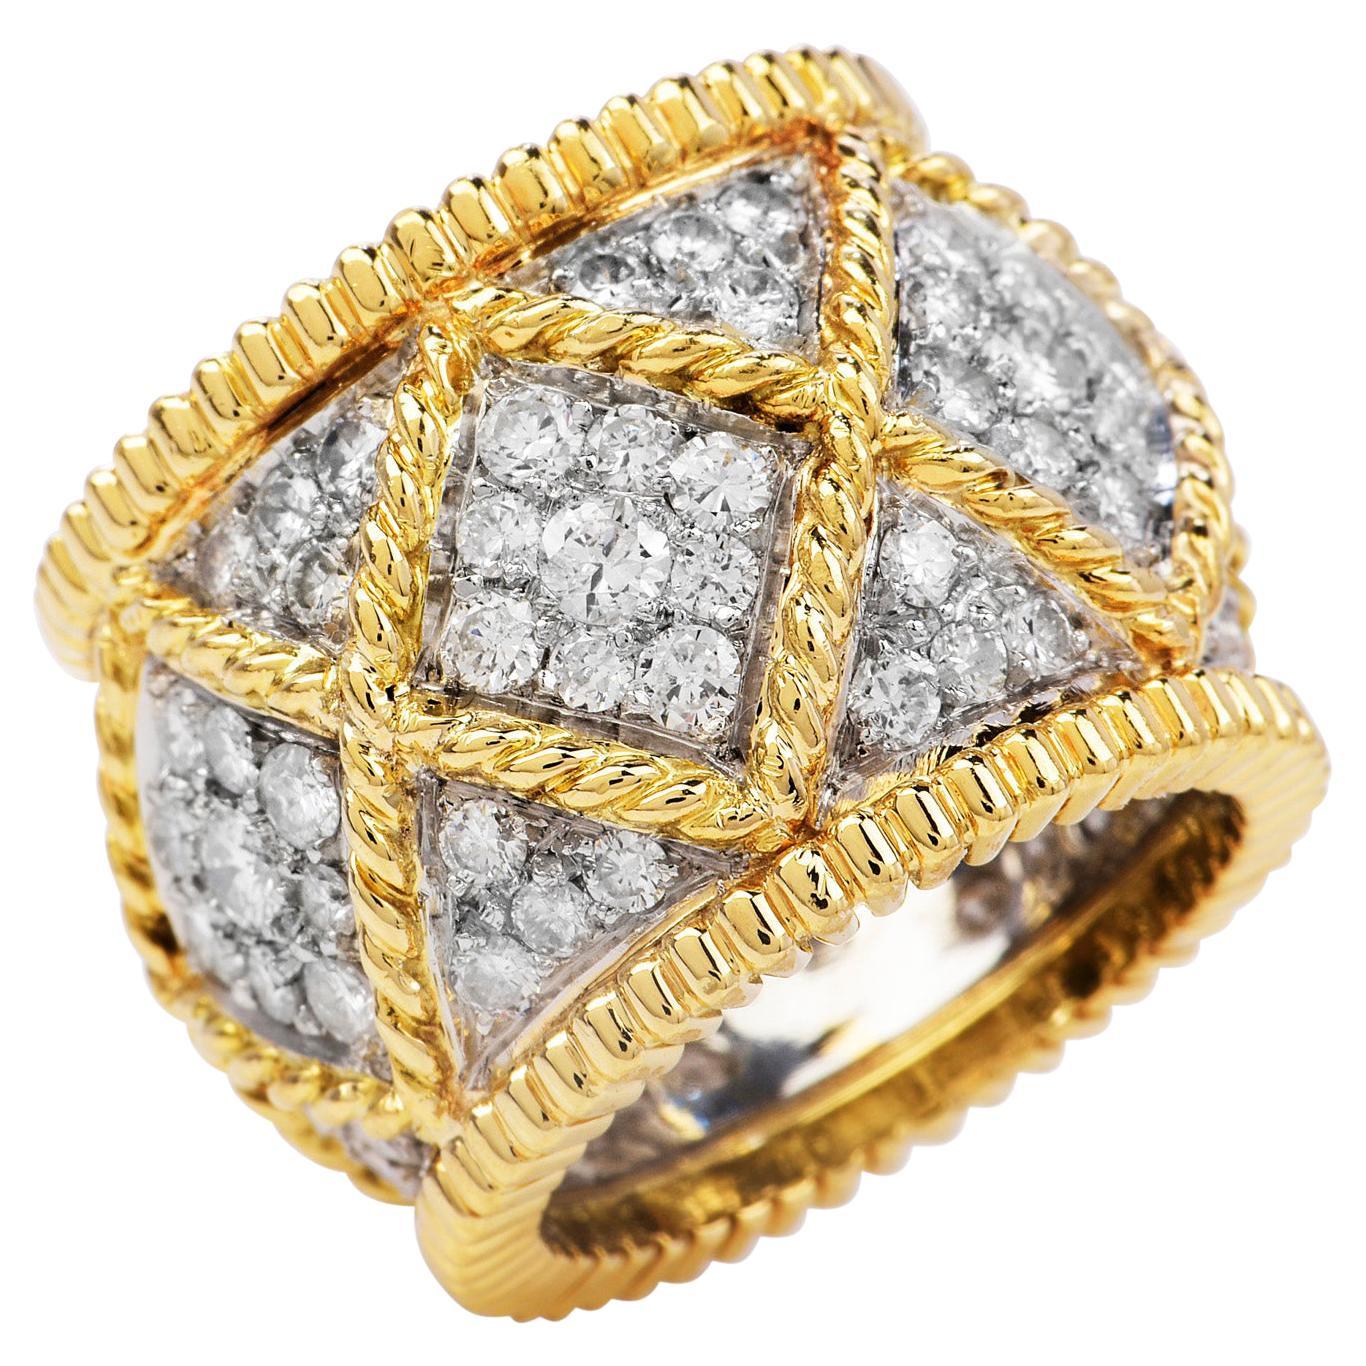 Dieser exquisite Diamantring aus 18 Karat Gold Elegant Wide Cocktail Ring ist die perfekte Ergänzung zu jedem Ensemble 
Fachmännisch gefertigt aus massivem 18K Weiß- und Gelbgold, bestehend aus (93) echten Diamanten im Rundschliff, mit einem